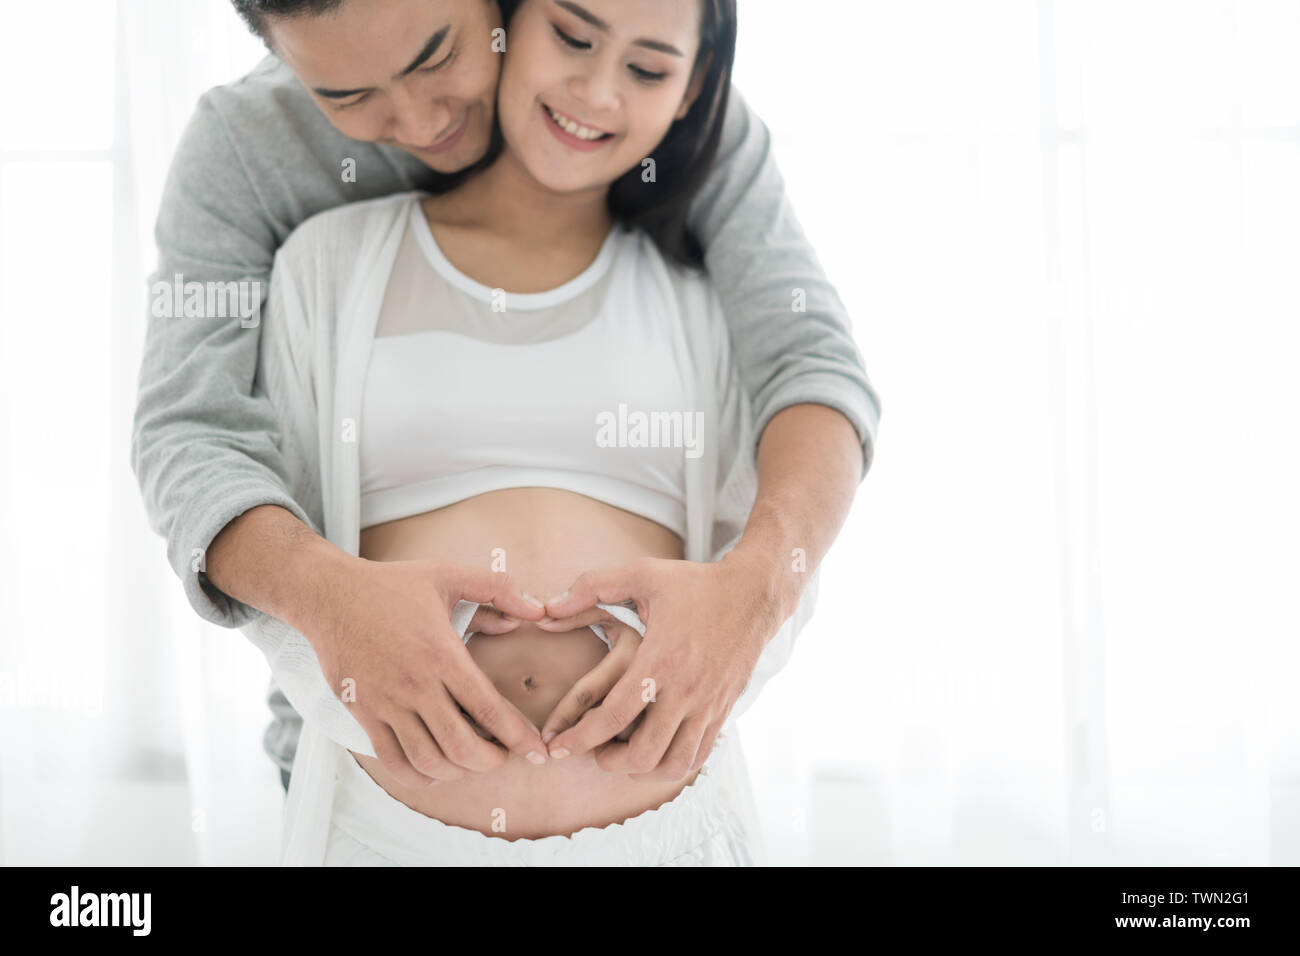 Asiatische schöne schwangere Frau und ihr schöner Mann umarmen den Bauch. Liebe Paar Hände machen ein Herz auf den schwangeren Bauch. Stockfoto